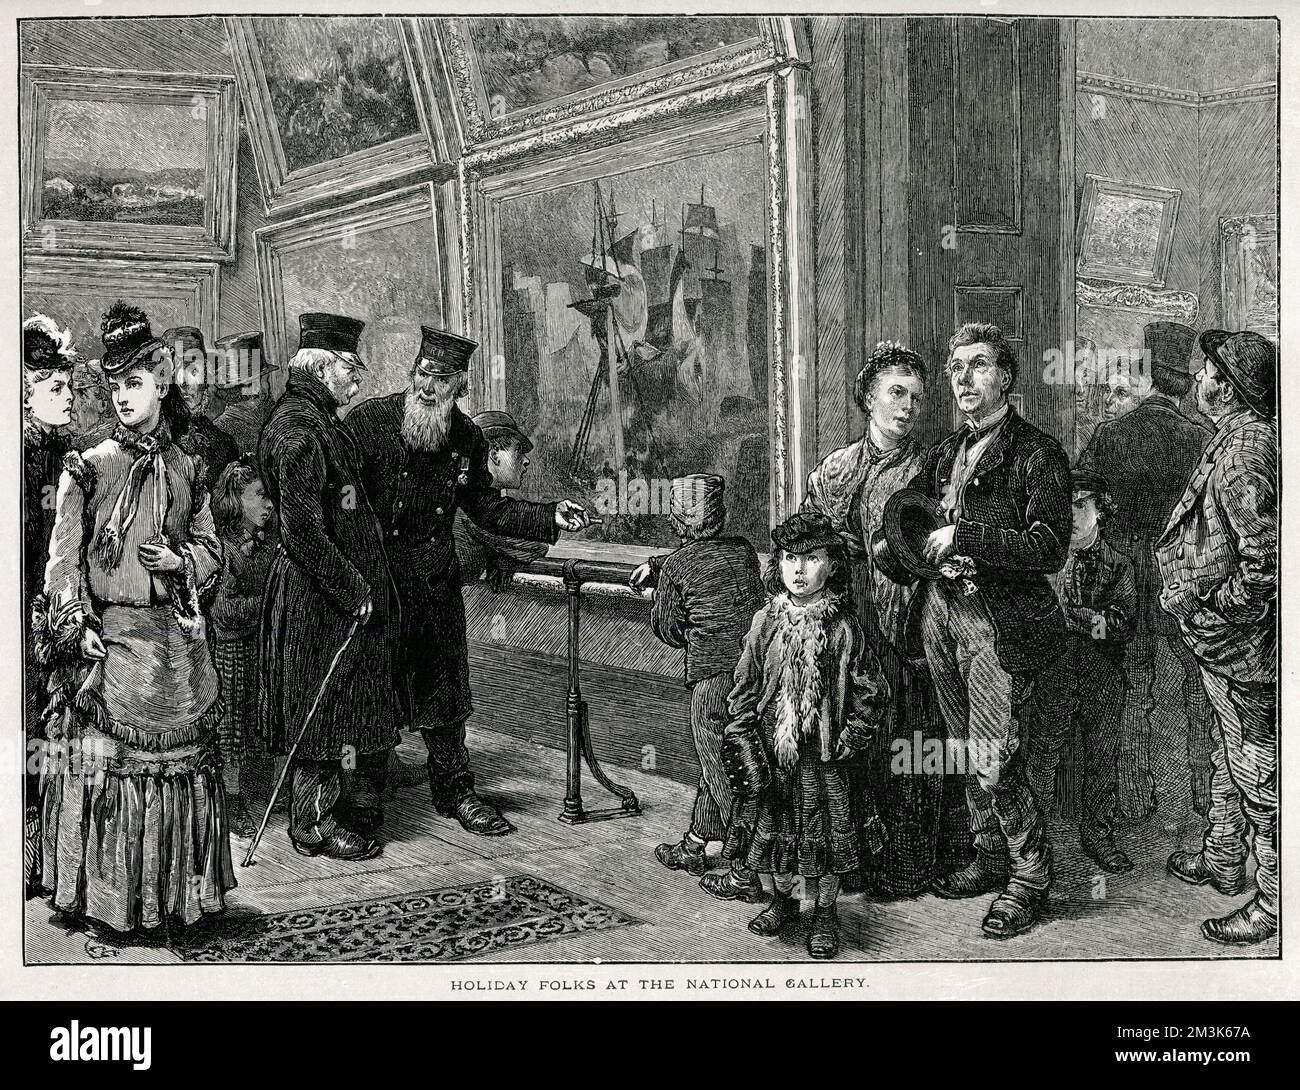 Die Gravur zeigt eine Reihe von Besuchern, die während der Sommerferien 1872 die Gemälde der National Gallery in London sehen. Auf der linken Seite diskutieren zwei "Chelsea-Rentner" die Vorzüge eines maritimen Gemäldes. Datum: 1872 Stockfoto